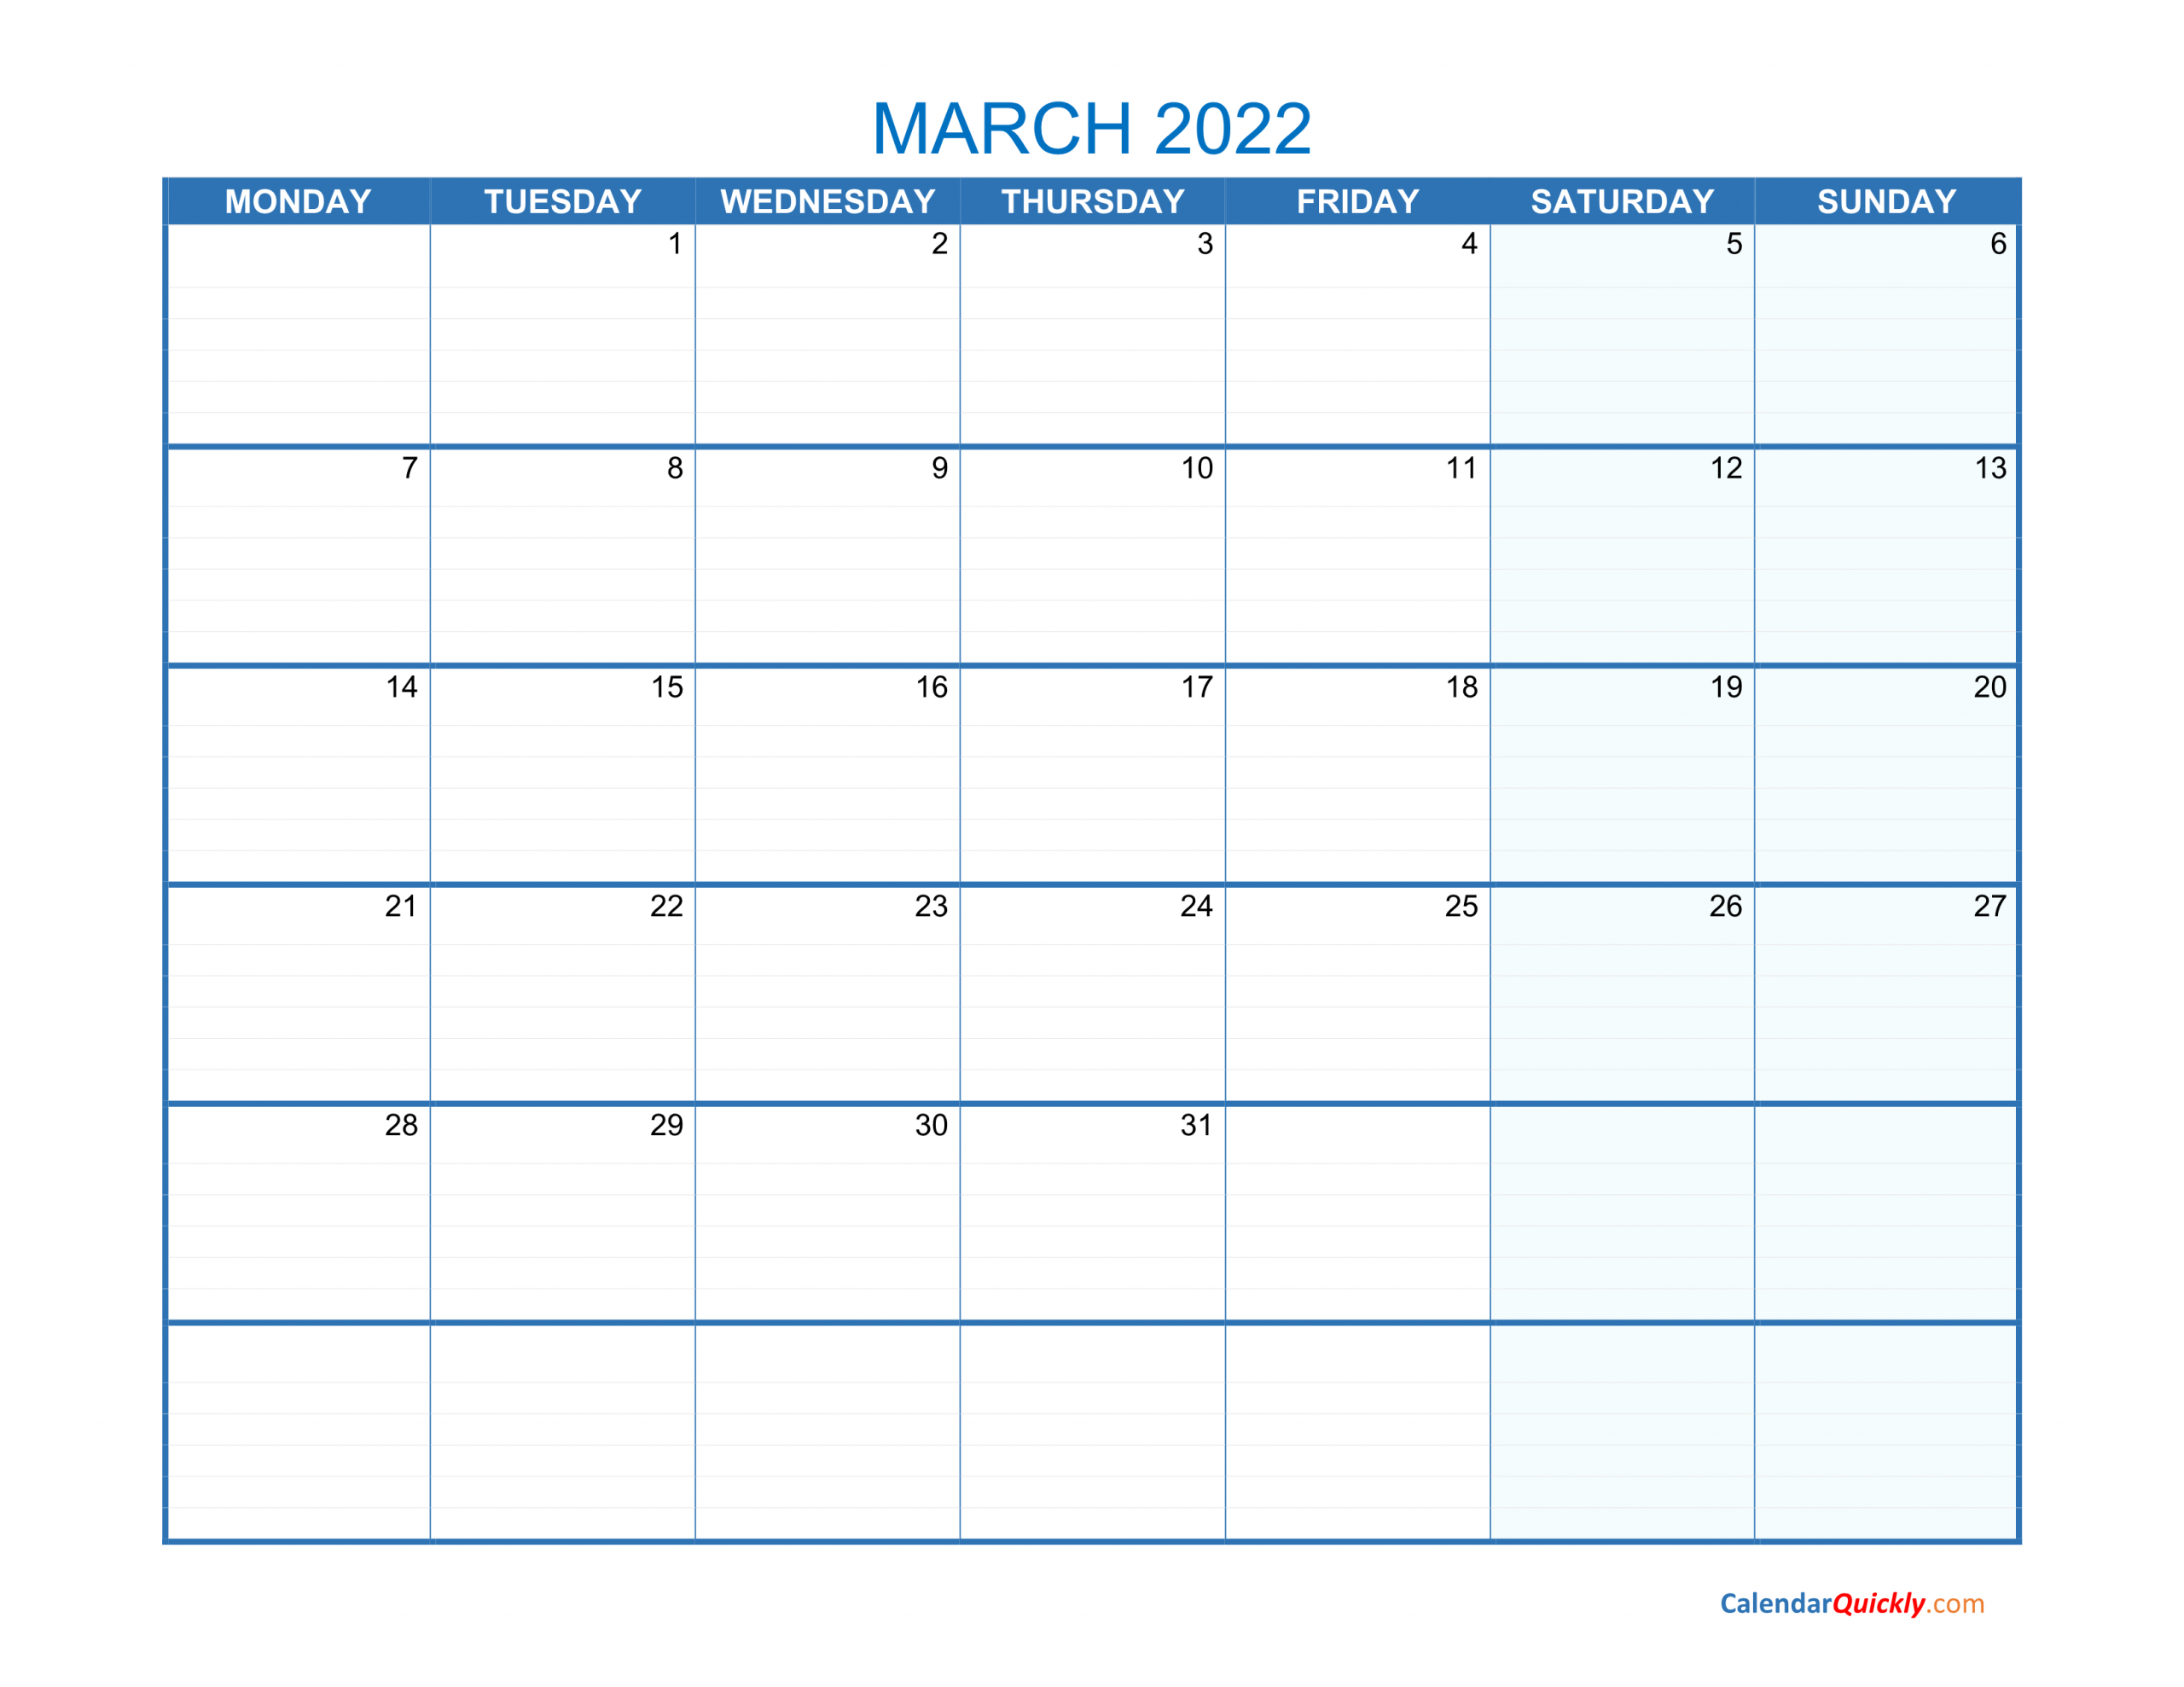 march monday 2022 blank calendar calendar quickly